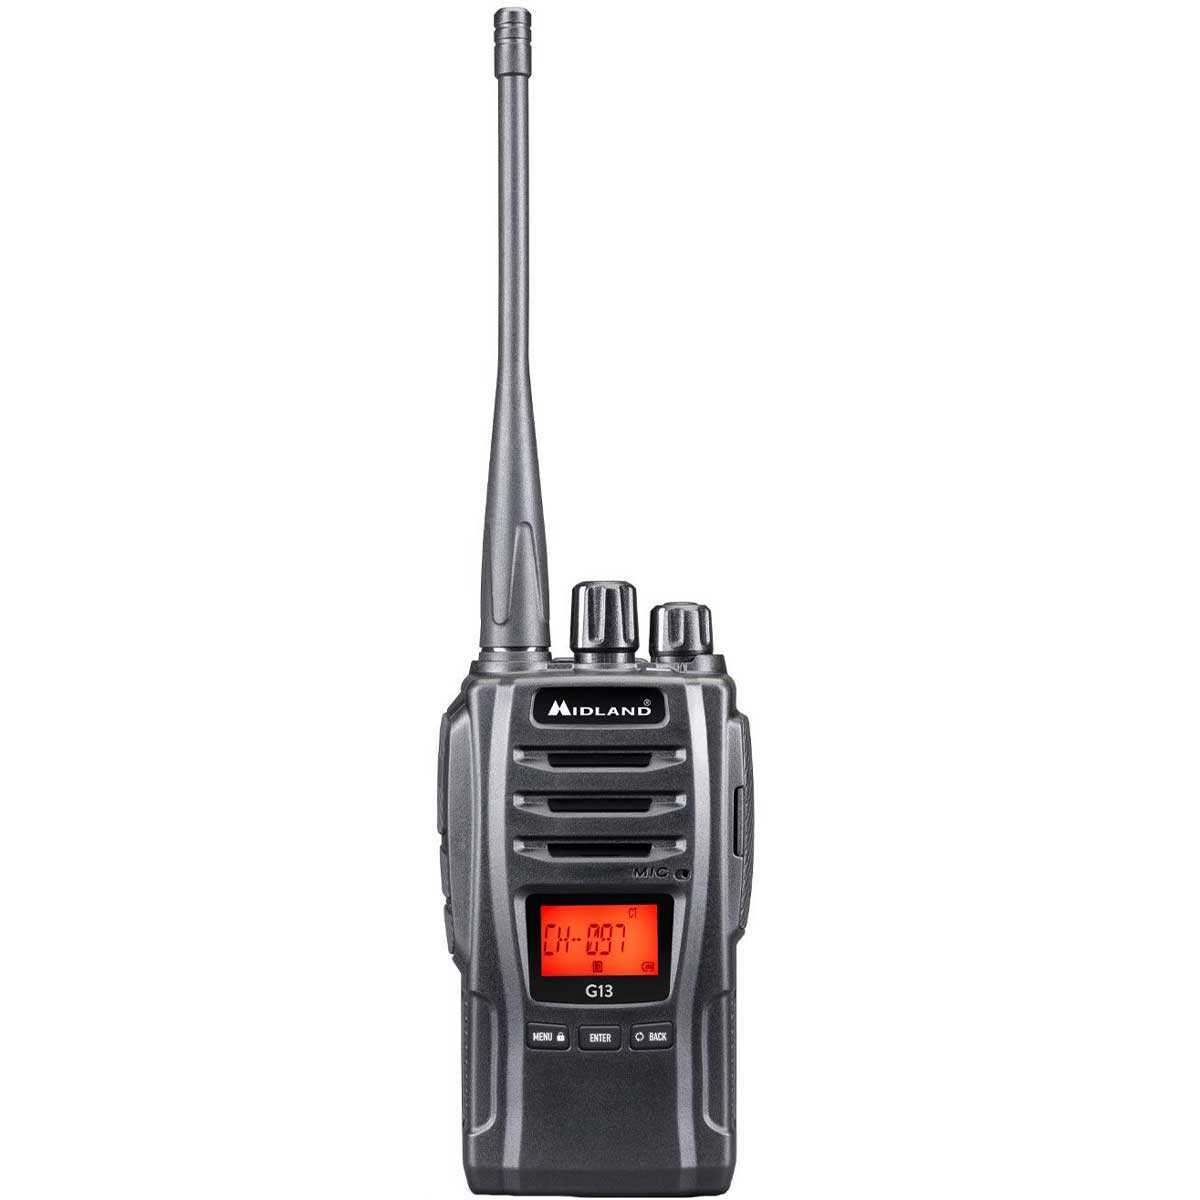 Radiotelefon Midland G13 PMR - Black (C1462)